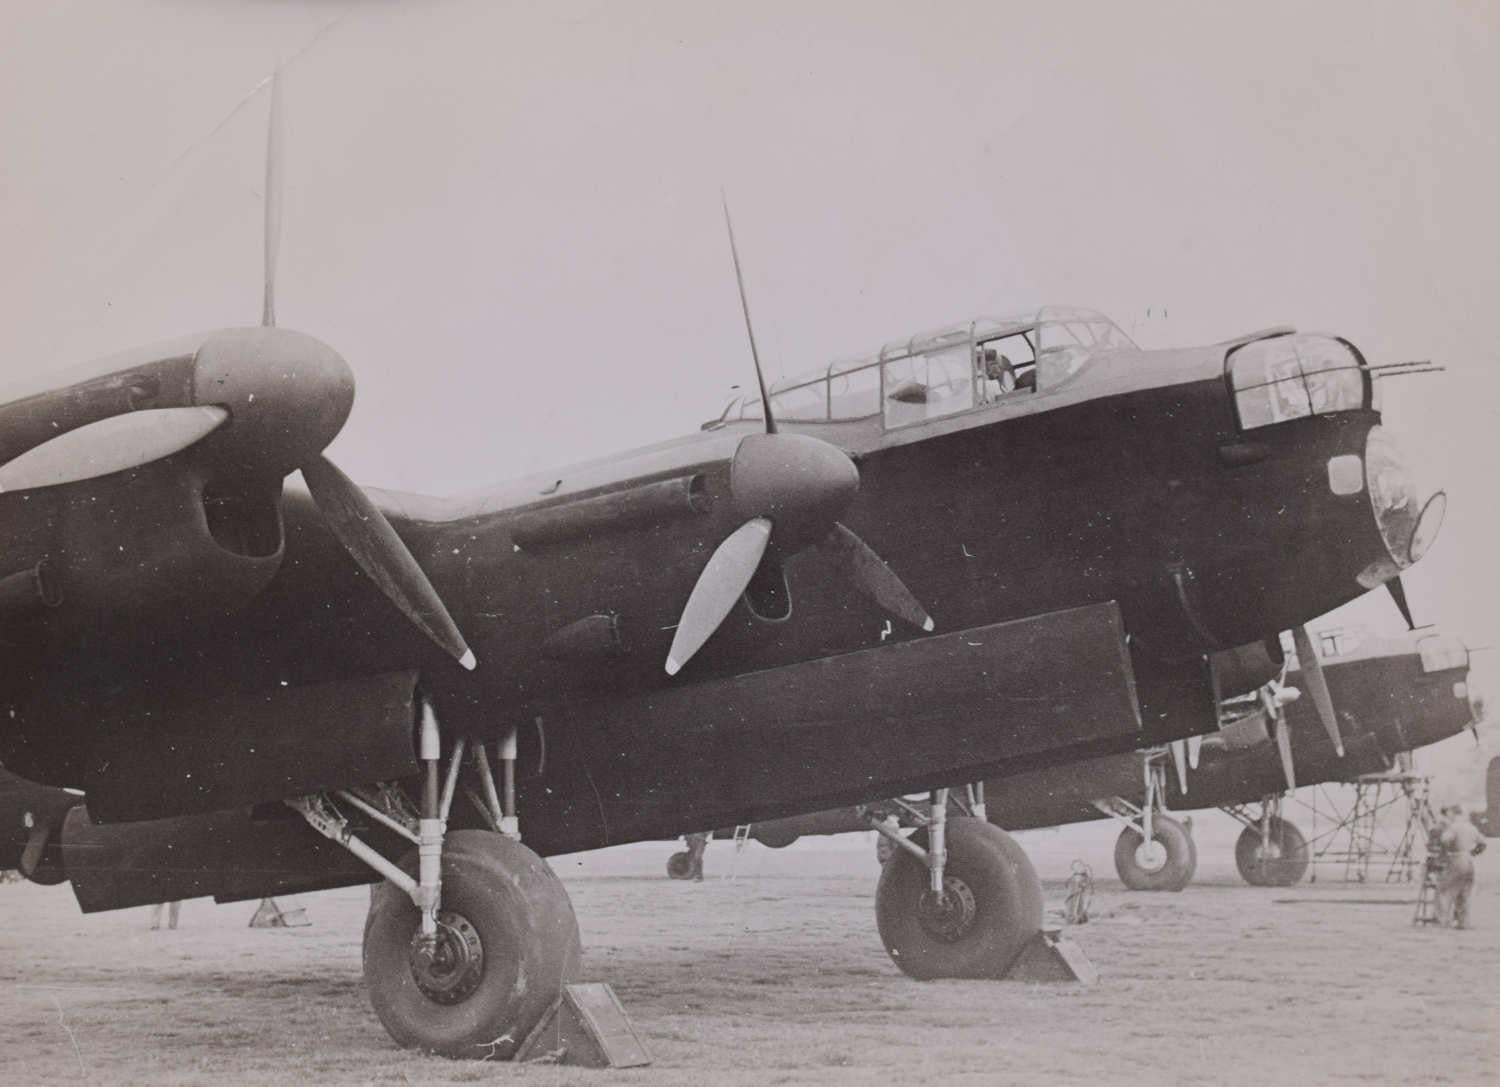 Unknown Black and White Photograph – Avro Lancaster Bombers Original Pressefoto 1940 für die Zeitschrift „Aeroplane“